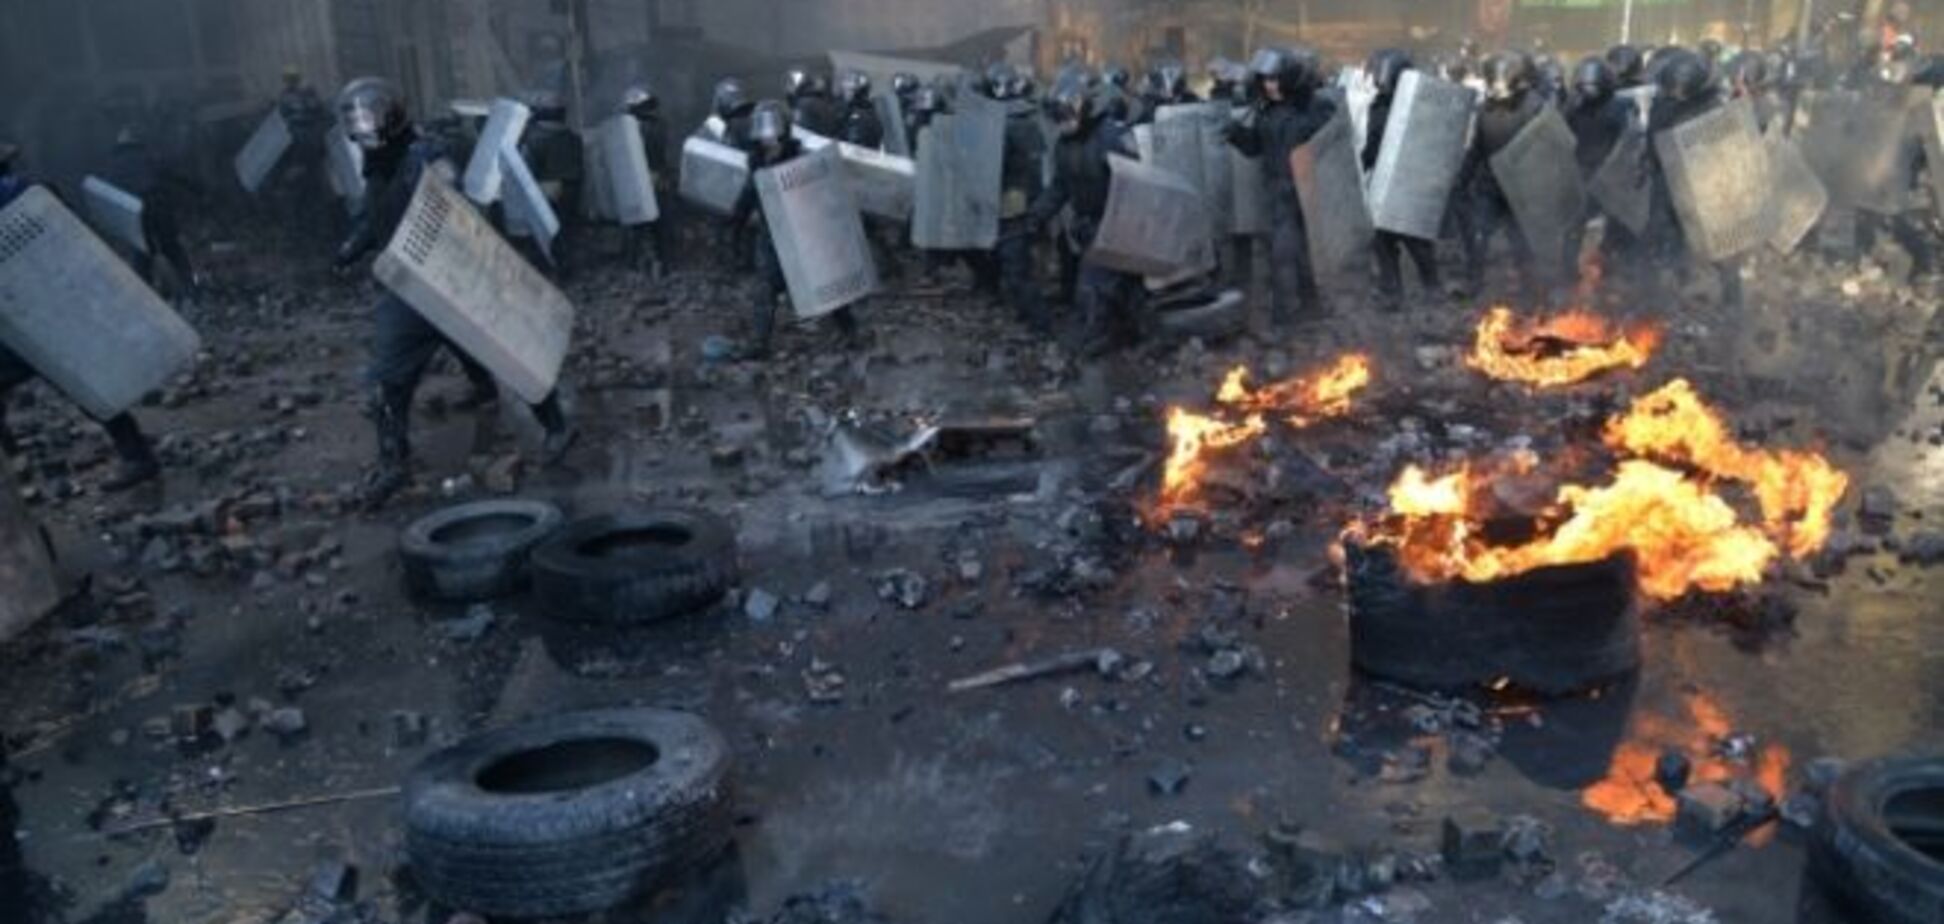 ГПУ объявила о подозрении в организации разгона Майдана 18 февраля